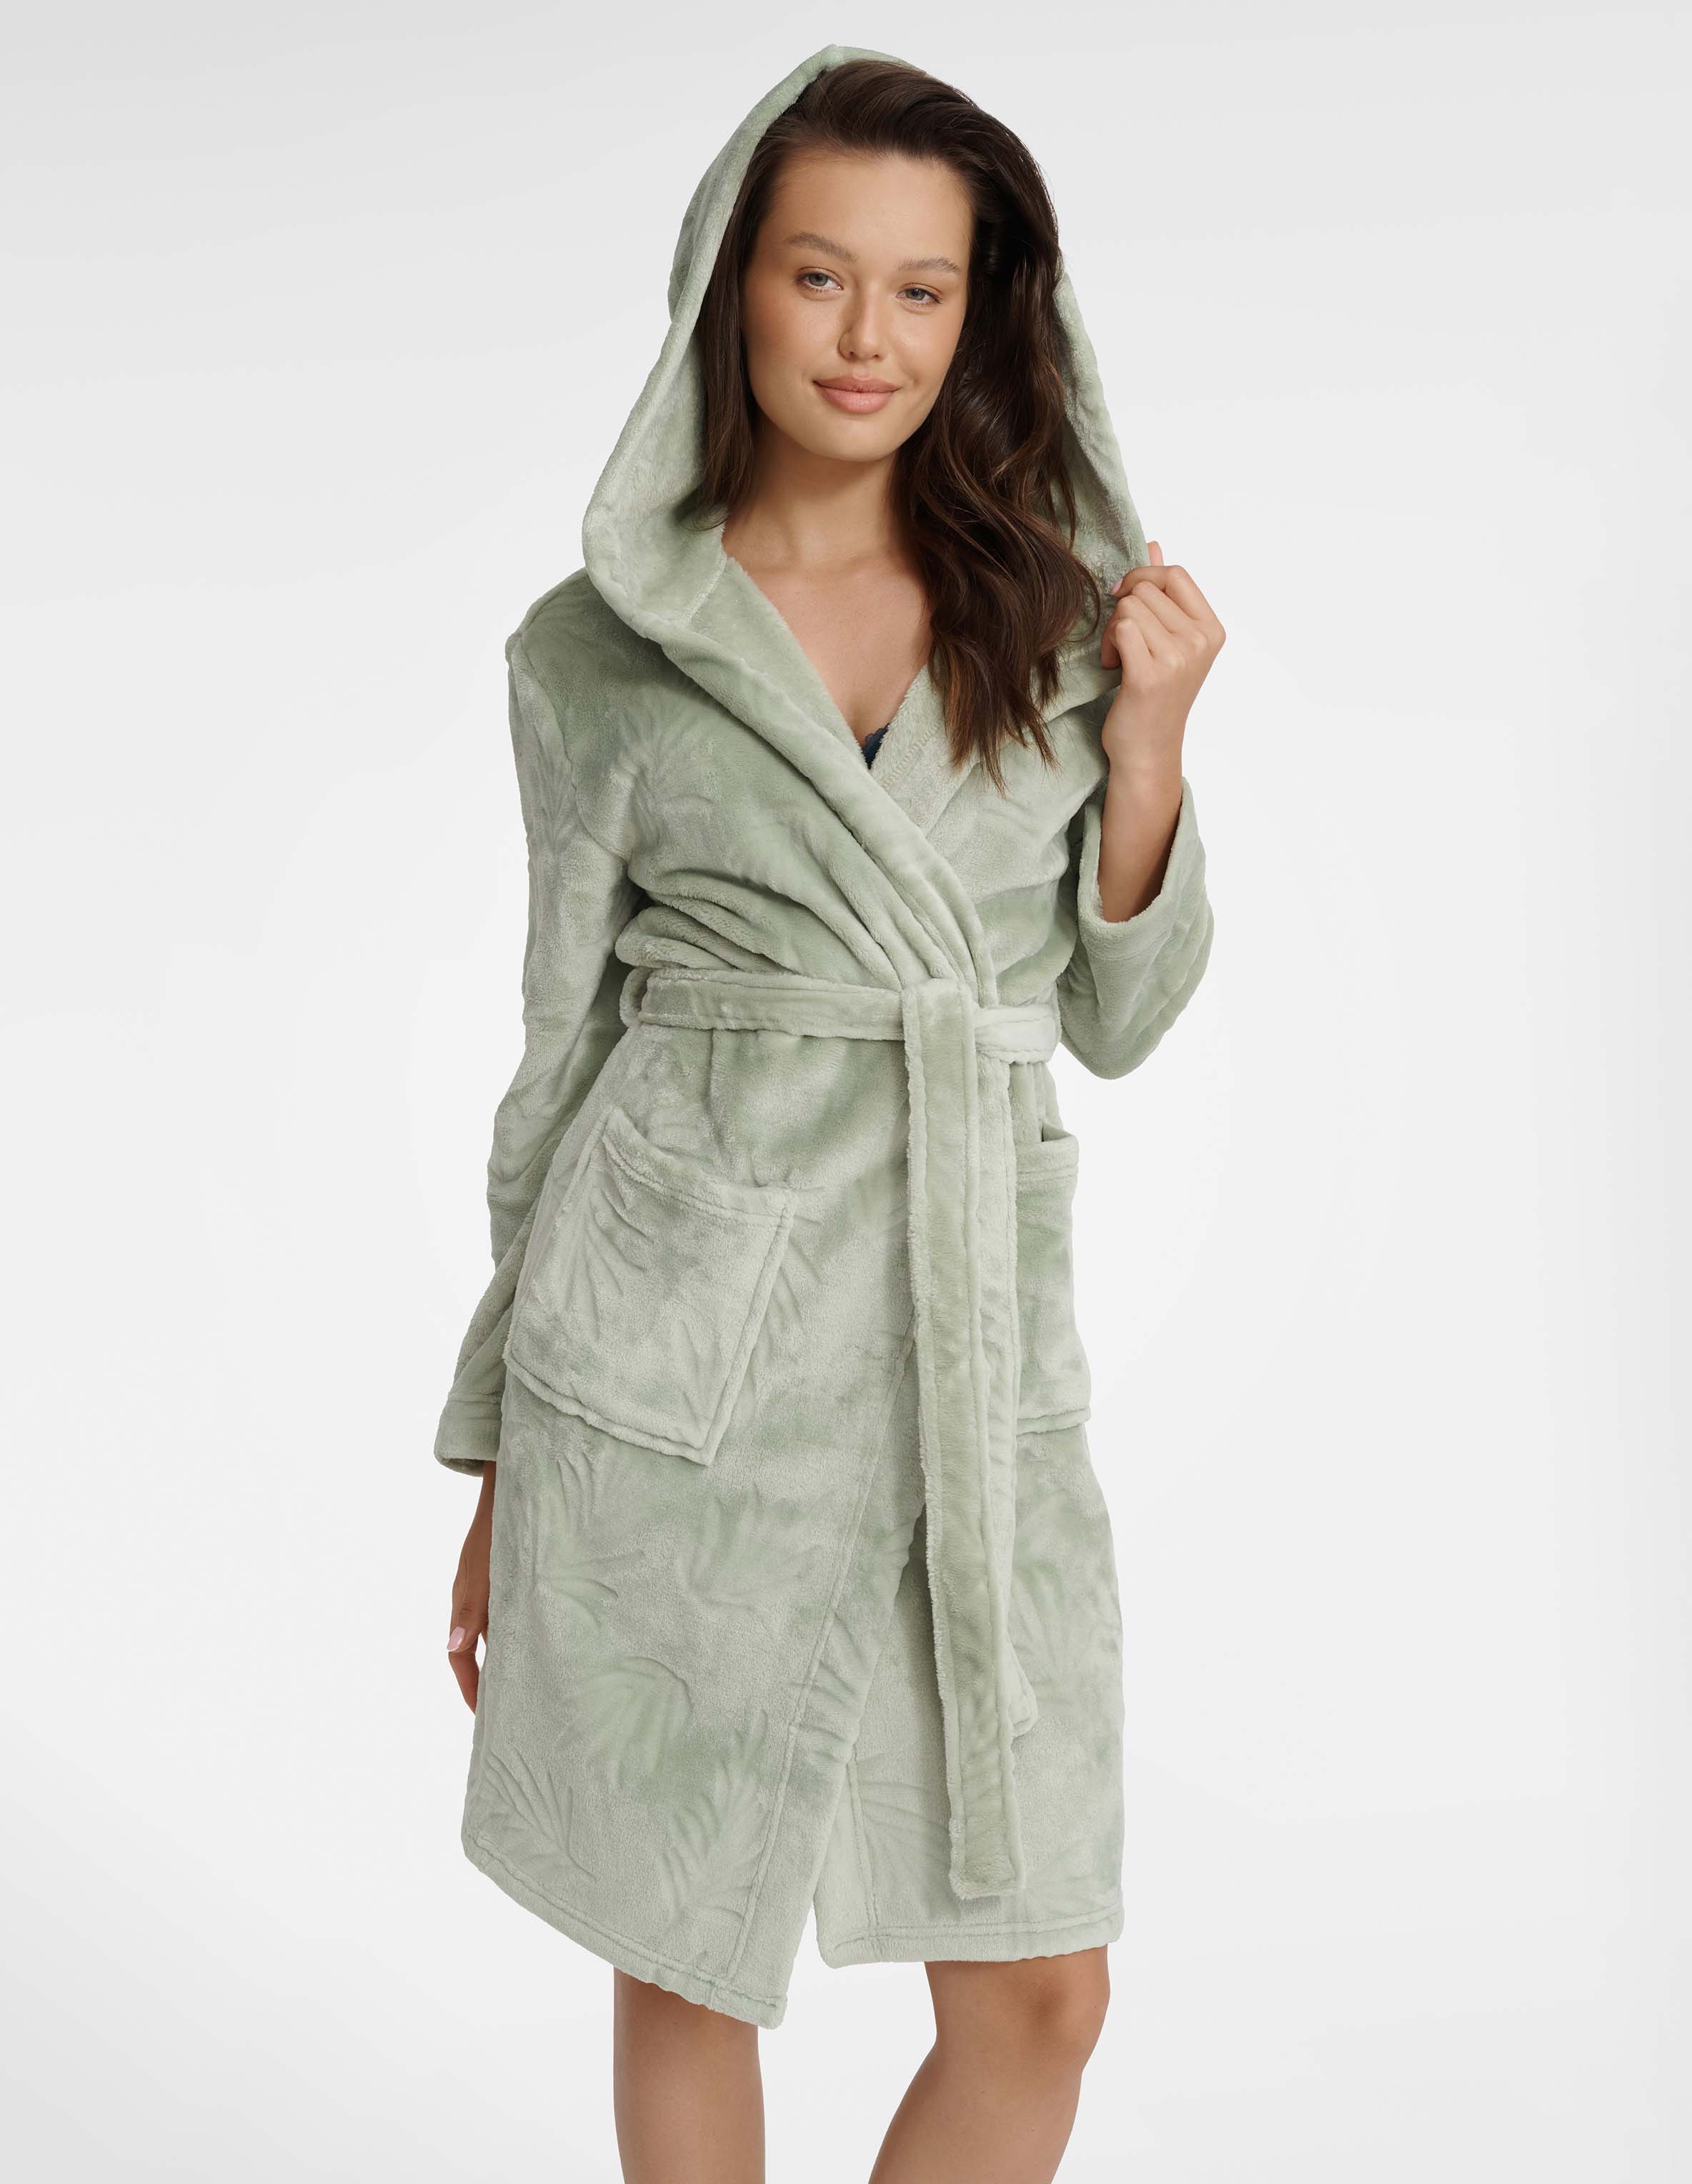 Grape bathrobe 41039-65X Green Green